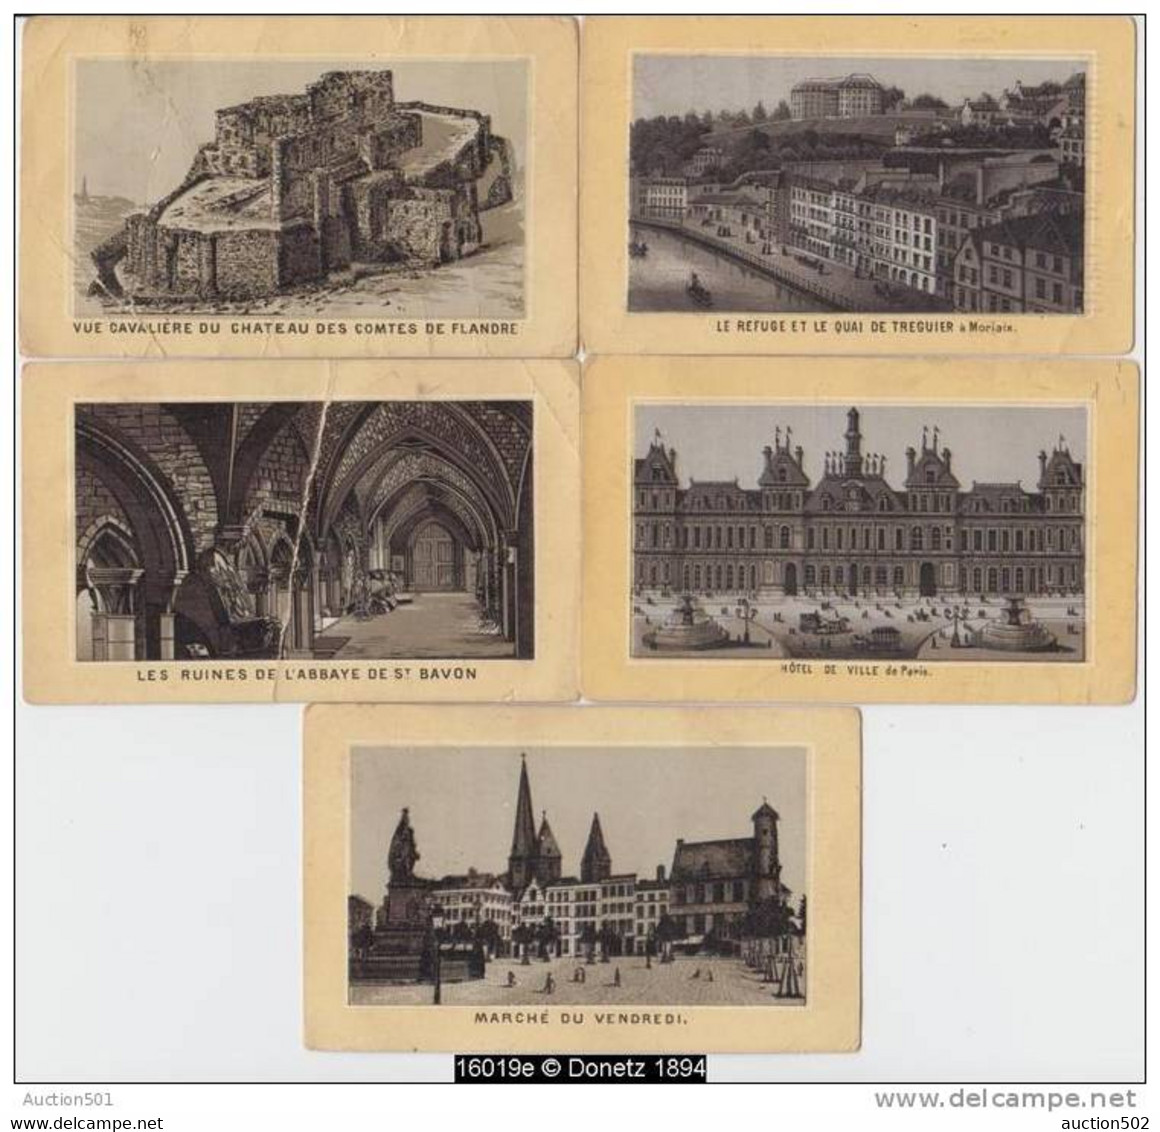 16019g GEMBLOUX Série 35 cartes 11x7 cm Dépot de Fabrique - Aunages - Félice Sacré - Tissus en tout genre